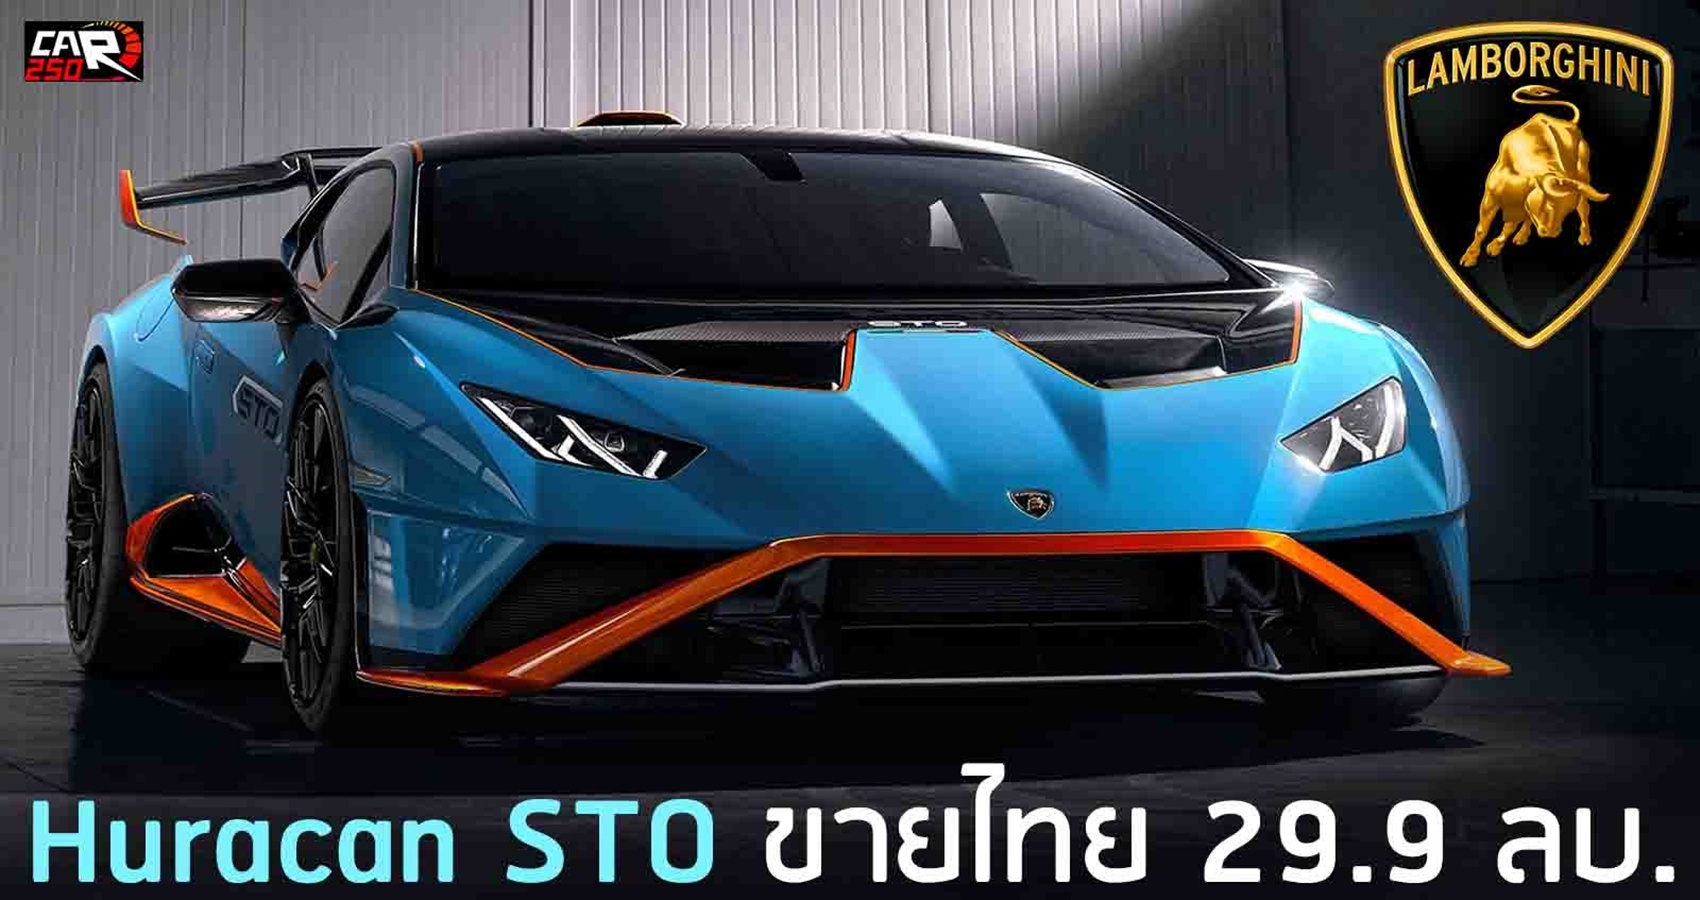 Lamborghini Huracan STO ขายไทย 29.9 ล้านบาท